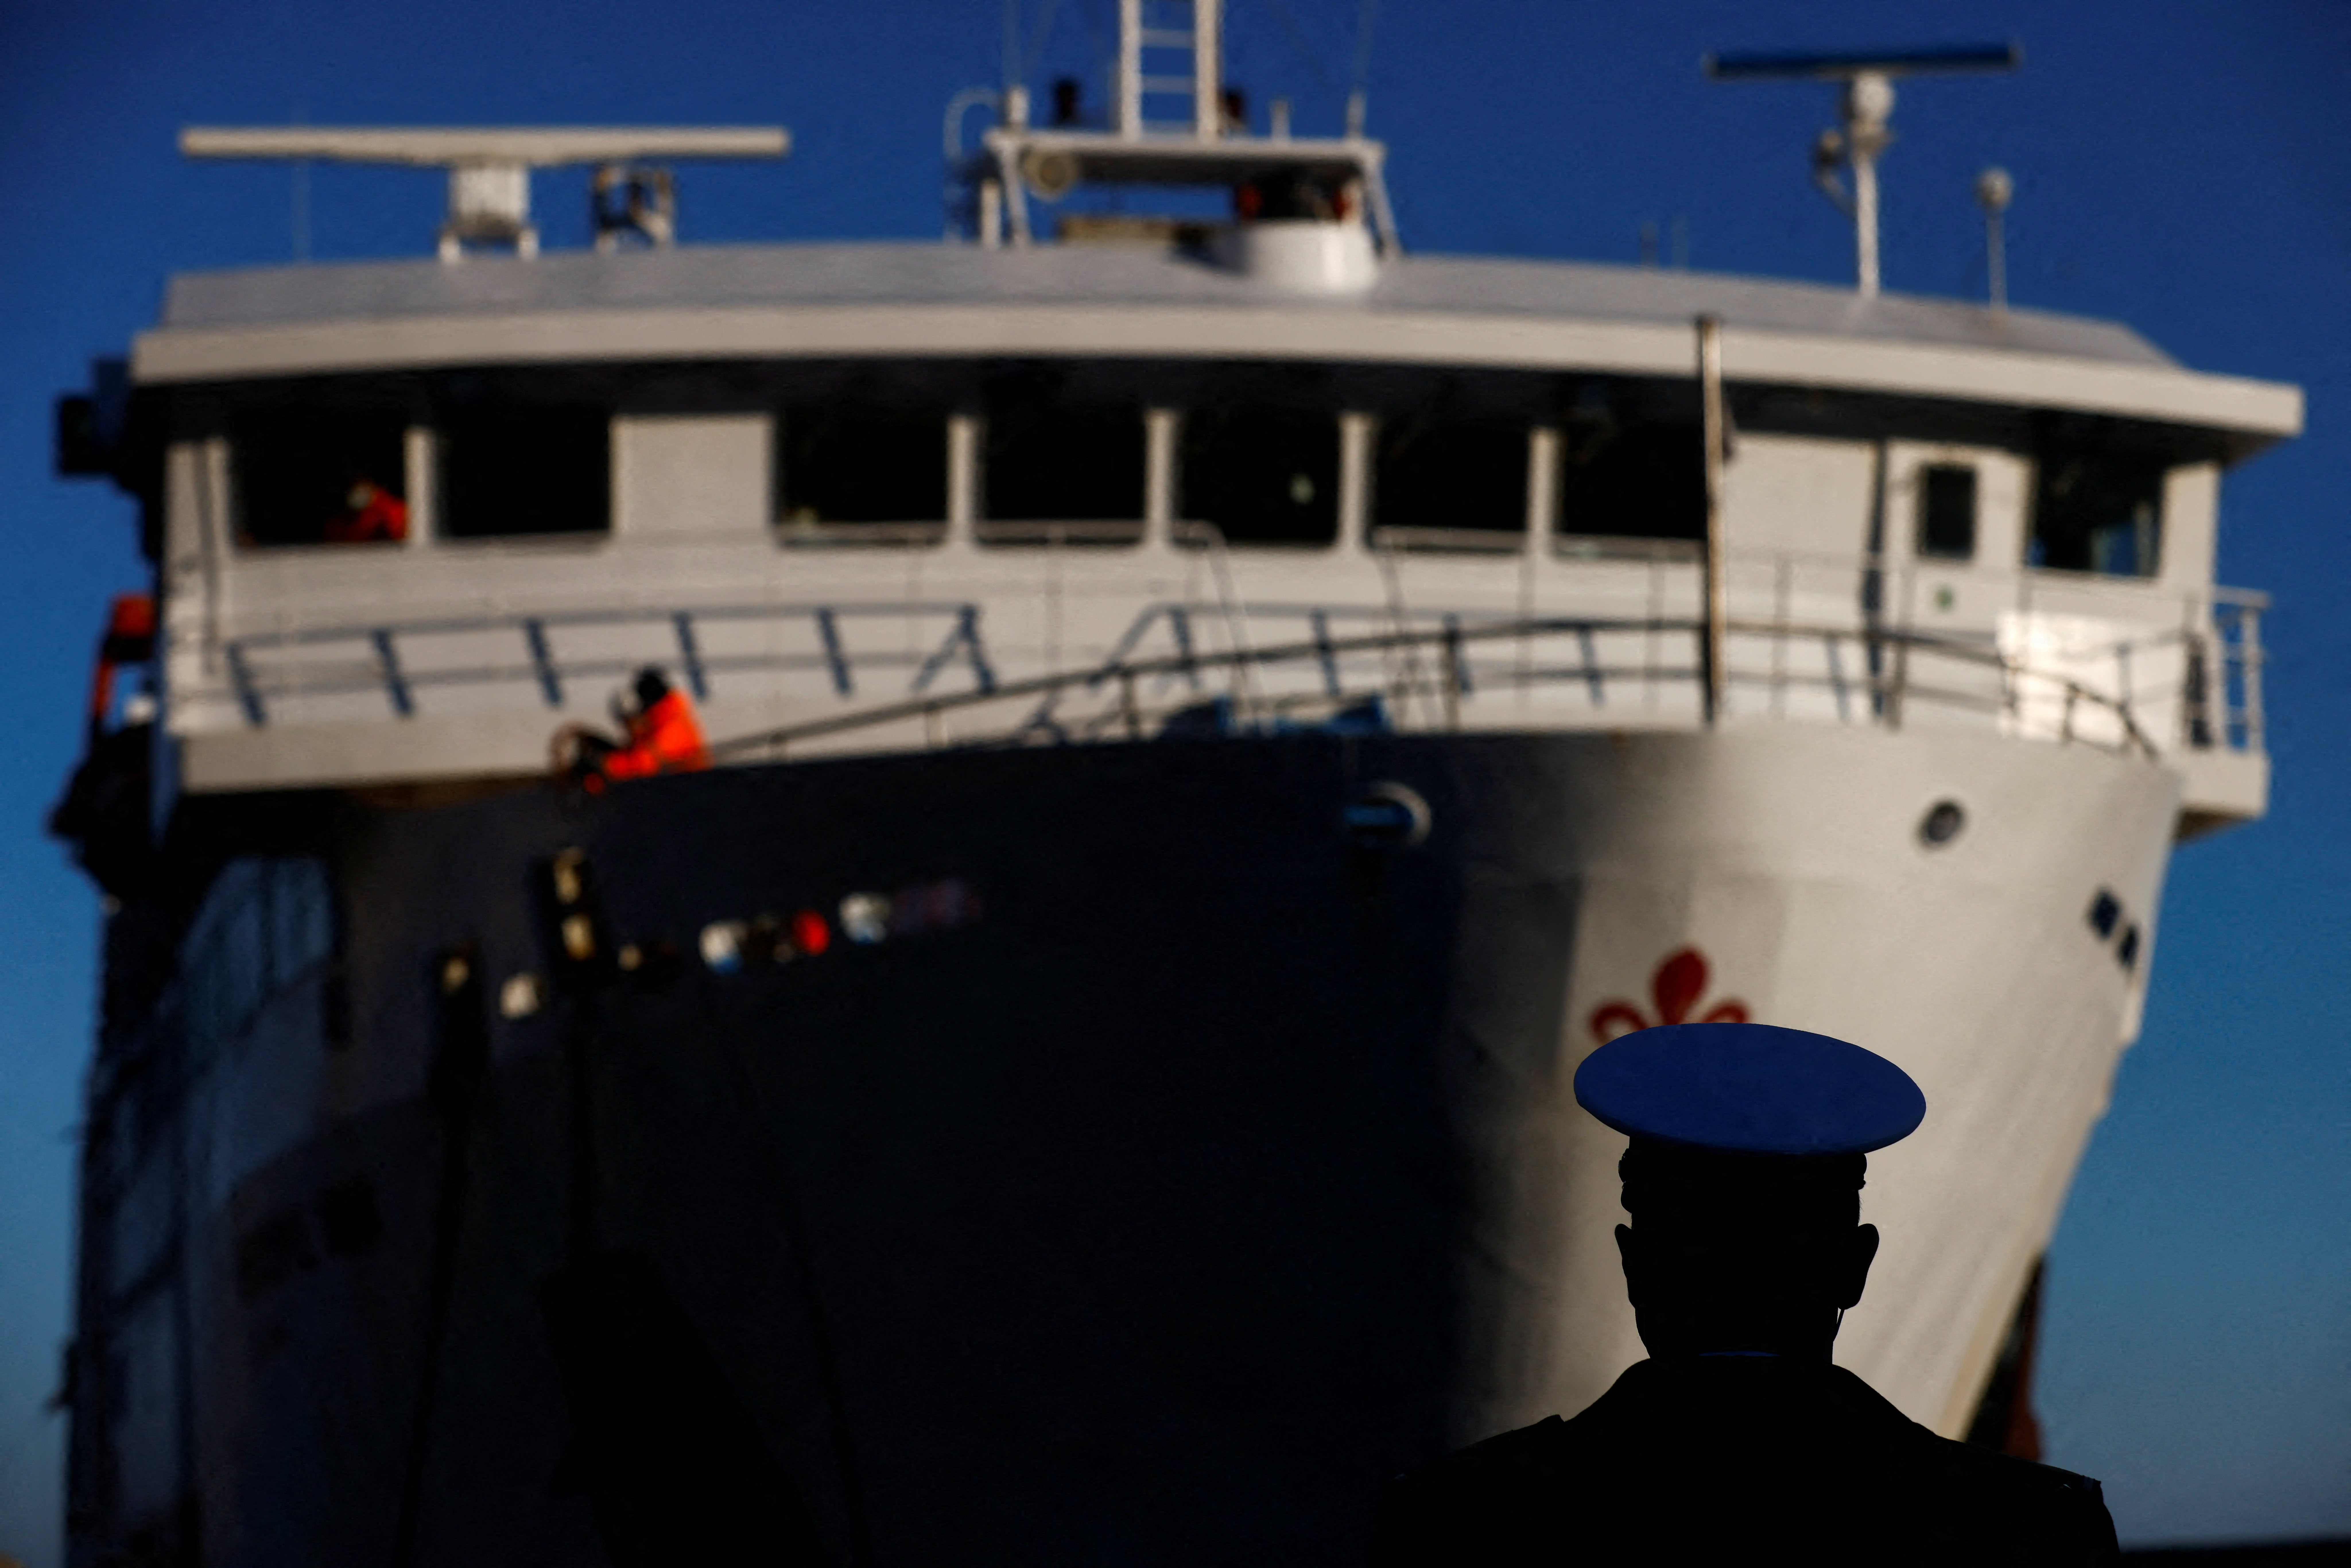 बंदरगाह अधिकारियों का एक सदस्य कोस्टा कॉनकॉर्डिया जहाज़ की तबाही की दसवीं वर्षगांठ के एक दिन पर एक नौका के आगमन के रूप में देखता है, जिसमें गिग्लियो द्वीप, इटली में 32 जनवरी, 13 को डूबने और डूबने के बाद 2022 लोग मारे गए थे। रॉयटर्स/यारा नारदीस